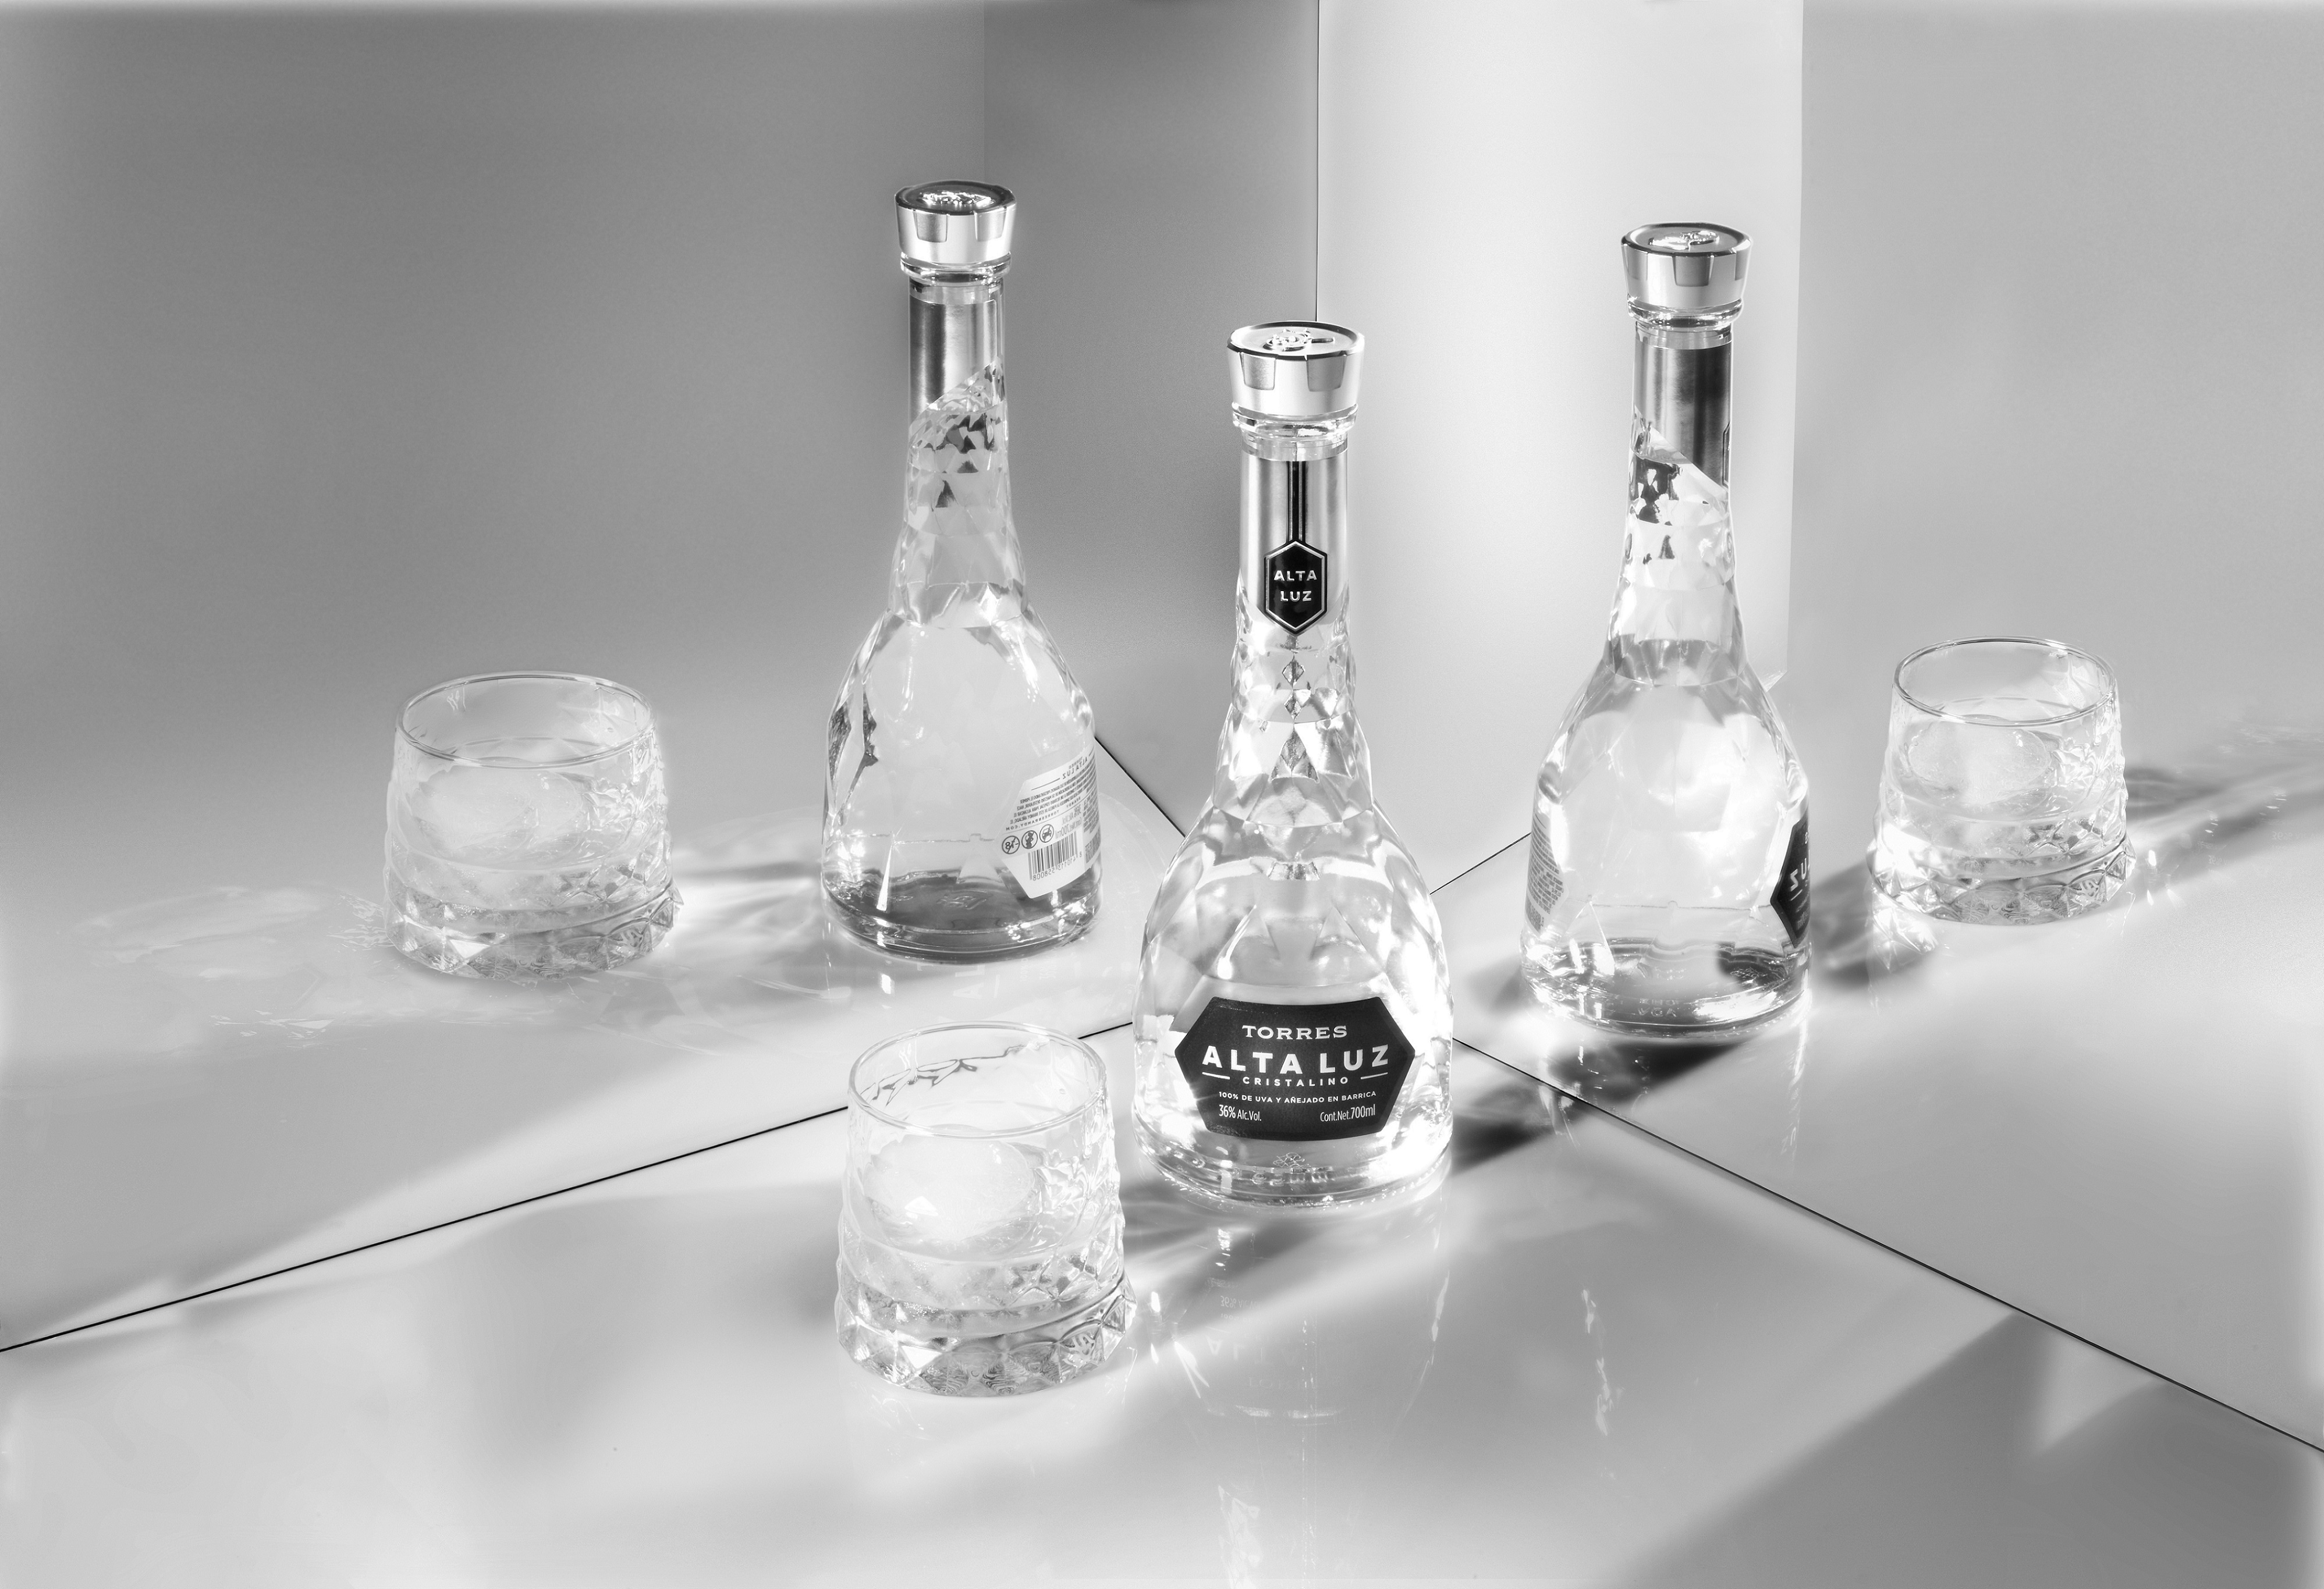 Nace Torres Alta Luz, el primer brandy cristalino, elaborado en Barcelona |  Familia Torres | Nace Torres Alta Luz, el primer brandy cristalino,  elaborado en Barcelona | Familia Torres